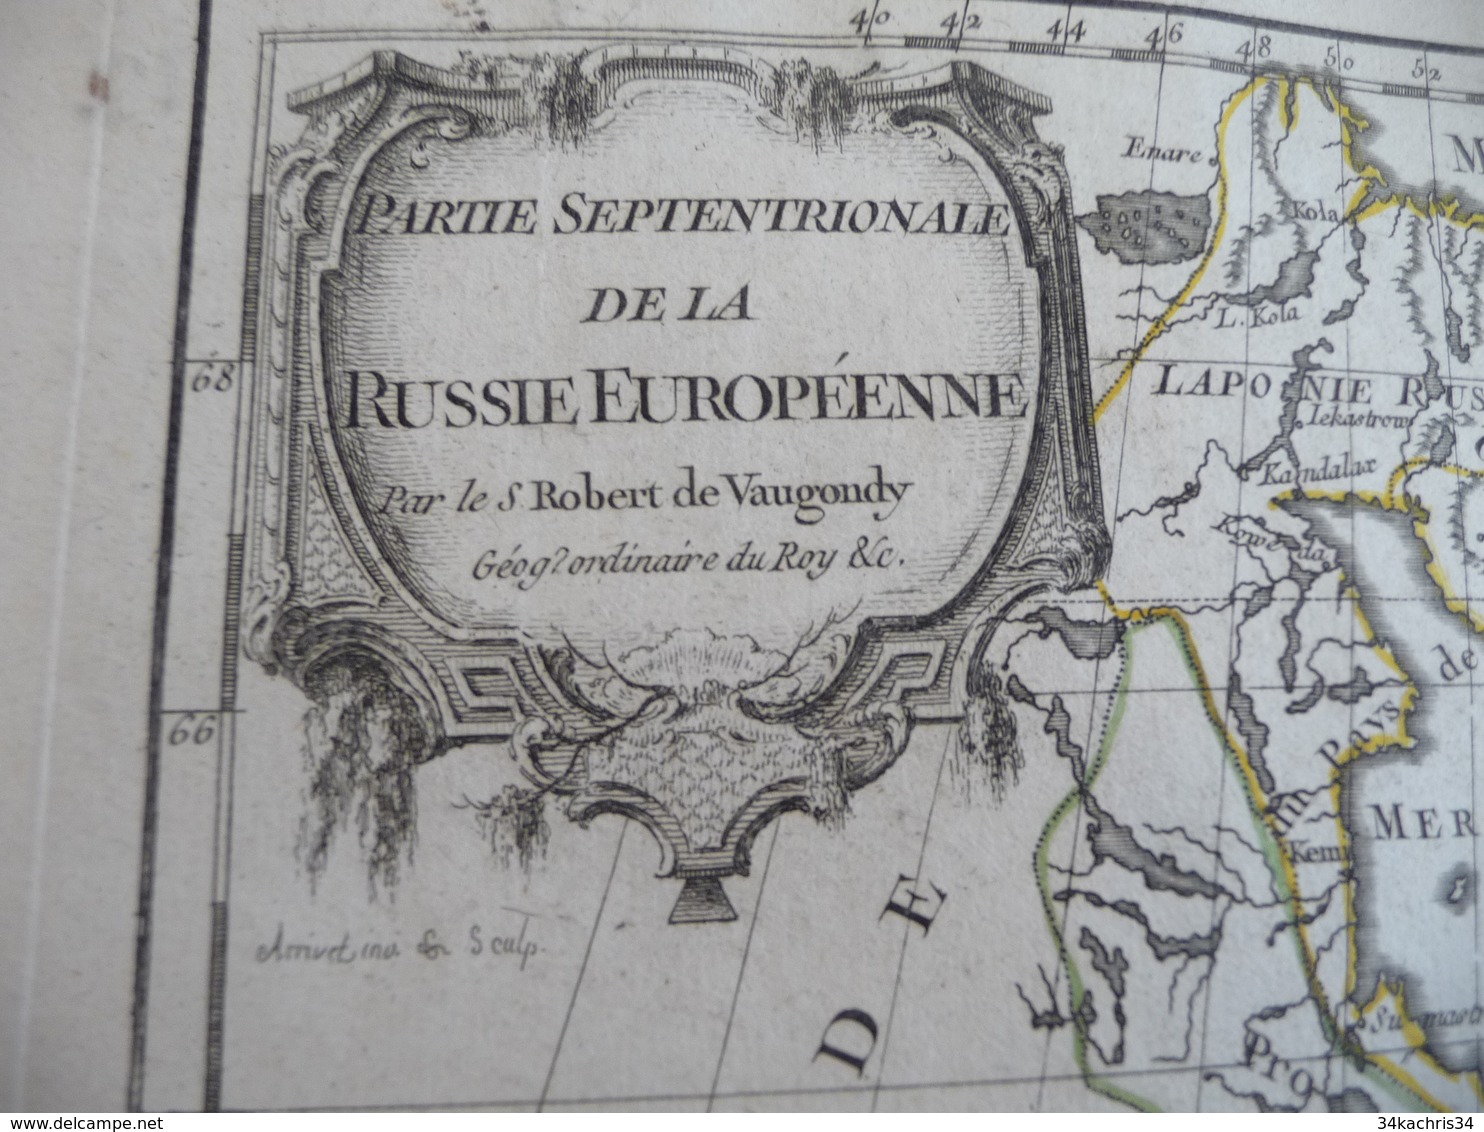 Carte Atlas Vaugondy 1778 Gravée Par Dussy 40 X 29cm Mouillures Partie Septentrionale De La Russie Européenne - Geographische Kaarten